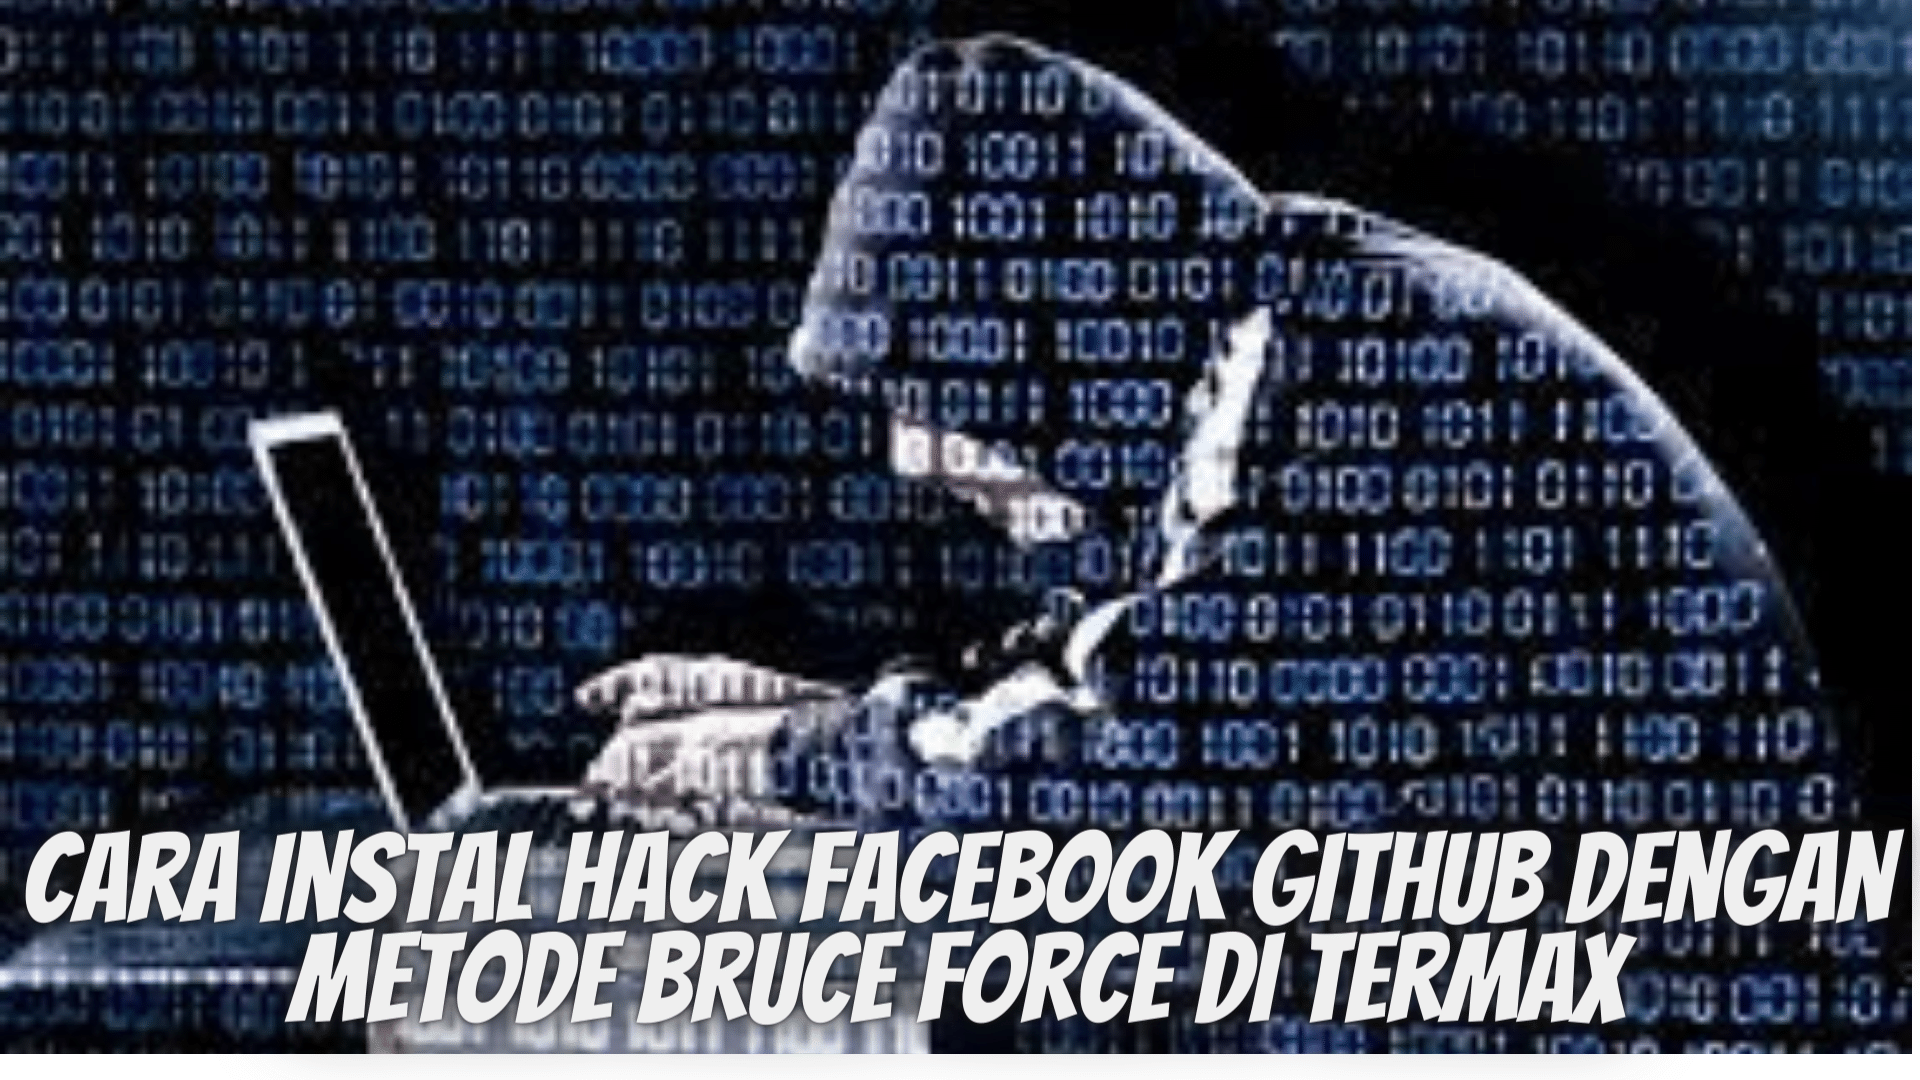 Cara install facebook github hack di Termax menggunakan metode bruce force